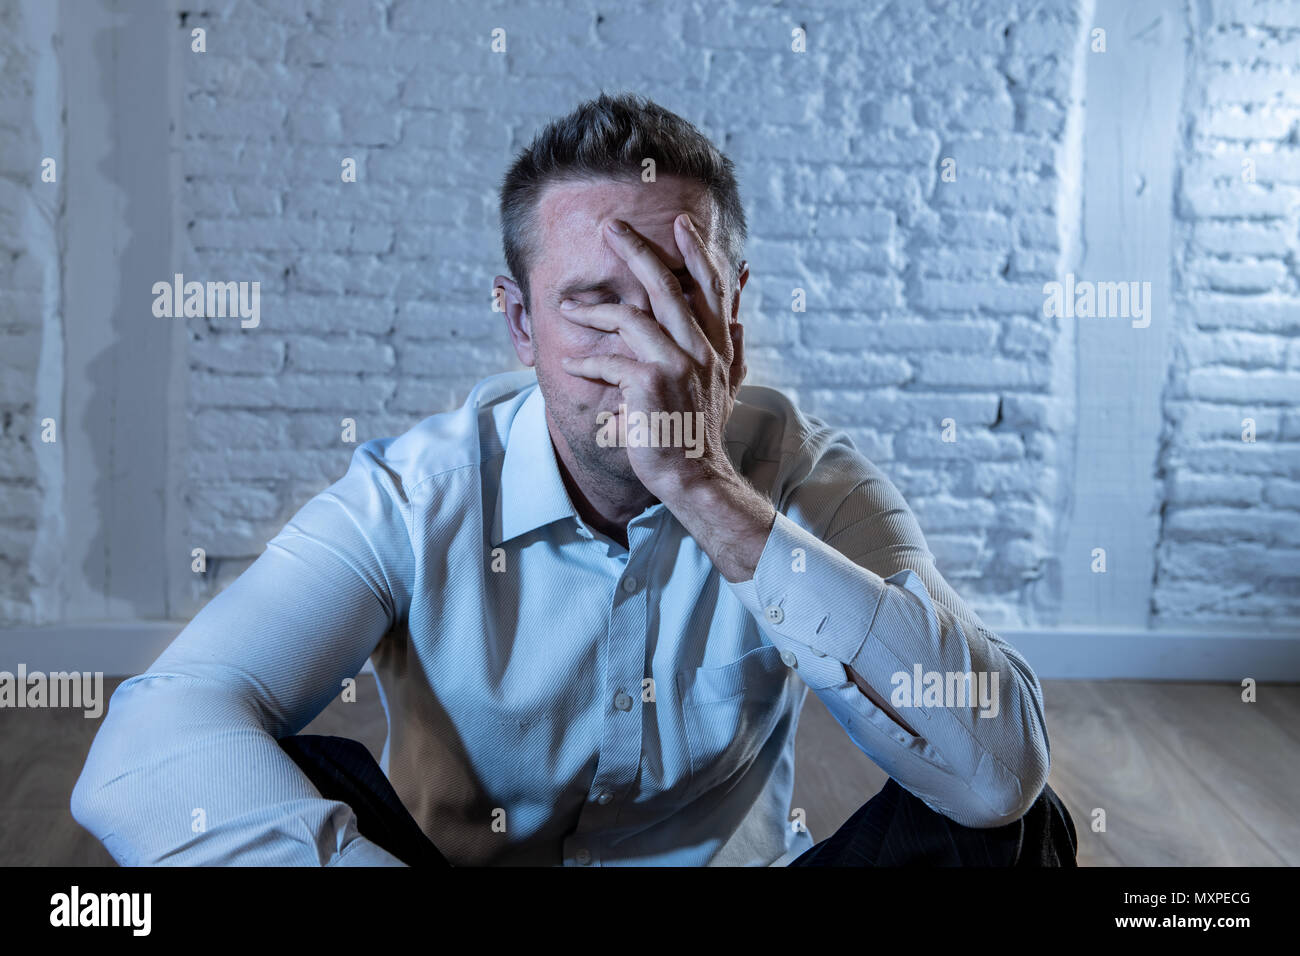 Deprimiert business Mann traurig, einsam und leiden unter Angst, lehnte sich auf eine weisse Wand zu Hause in der psychischen Gesundheit depression Konzept Stockfoto